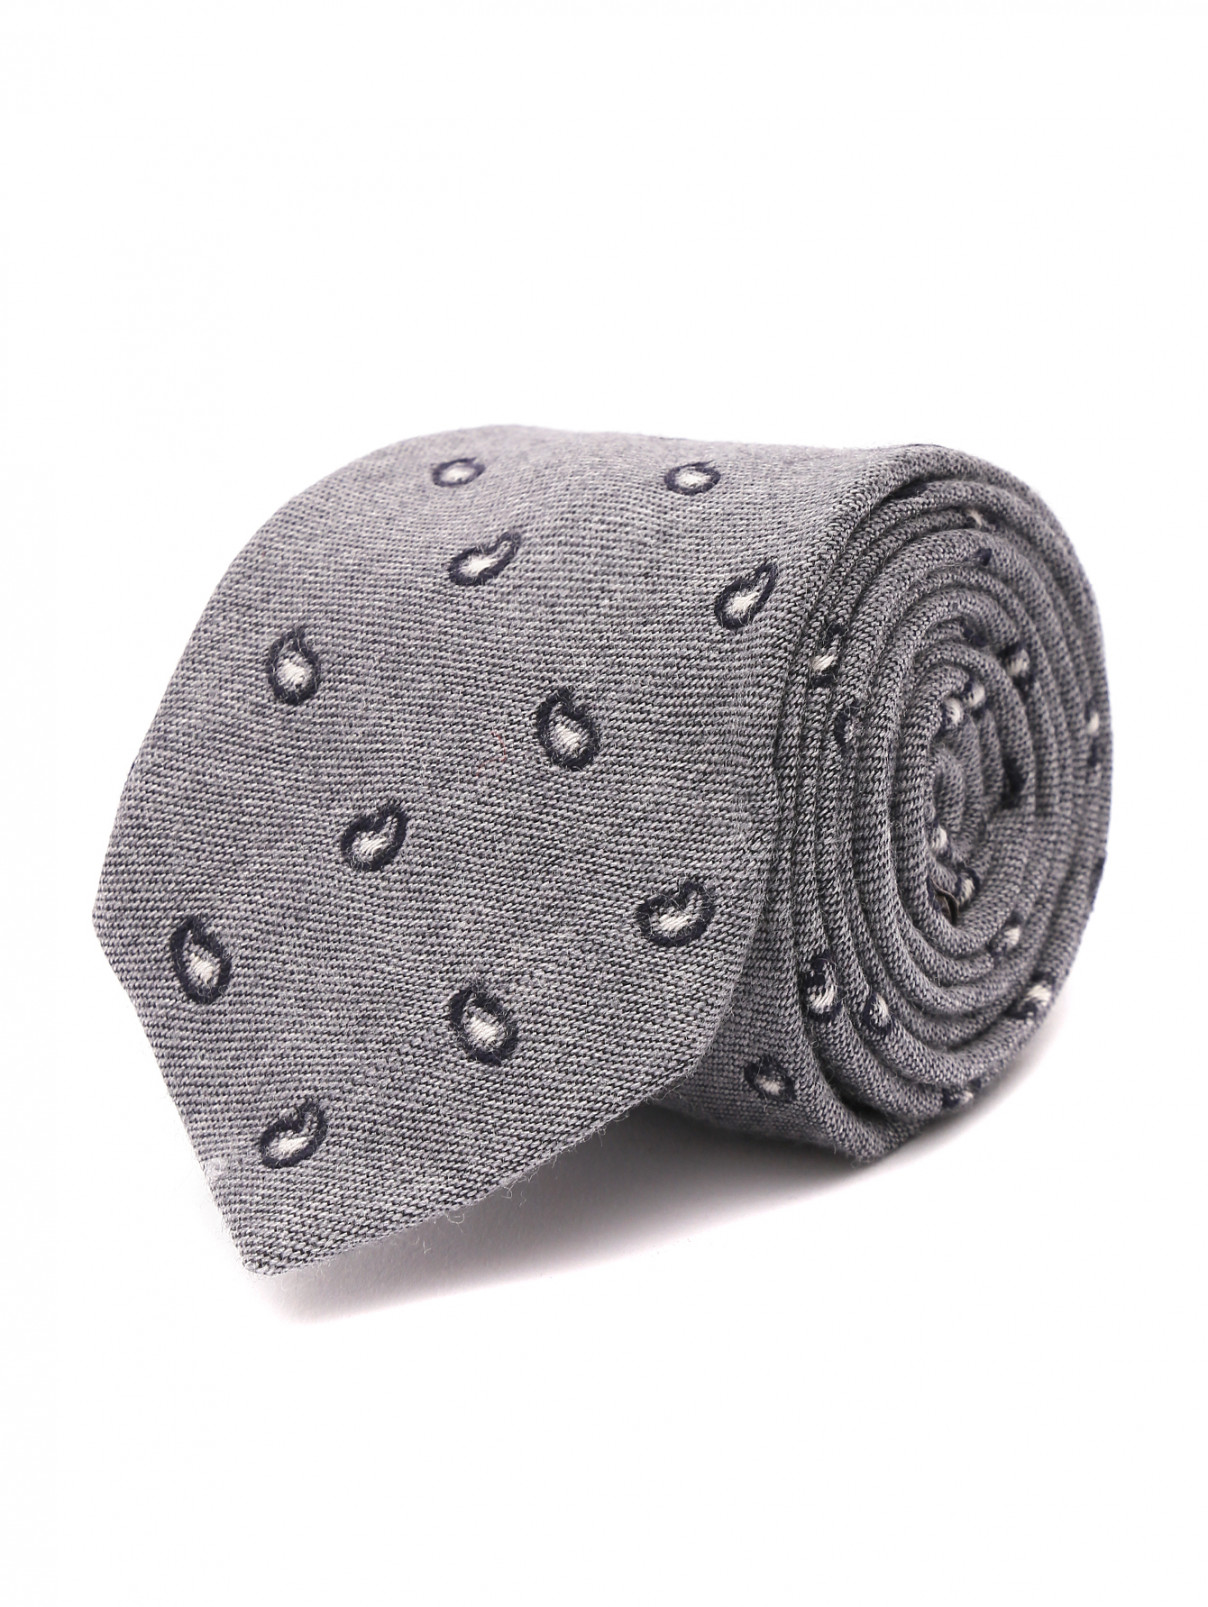 Галстук из шерсти и шелка с узором ROSI Collection  –  Общий вид  – Цвет:  Серый